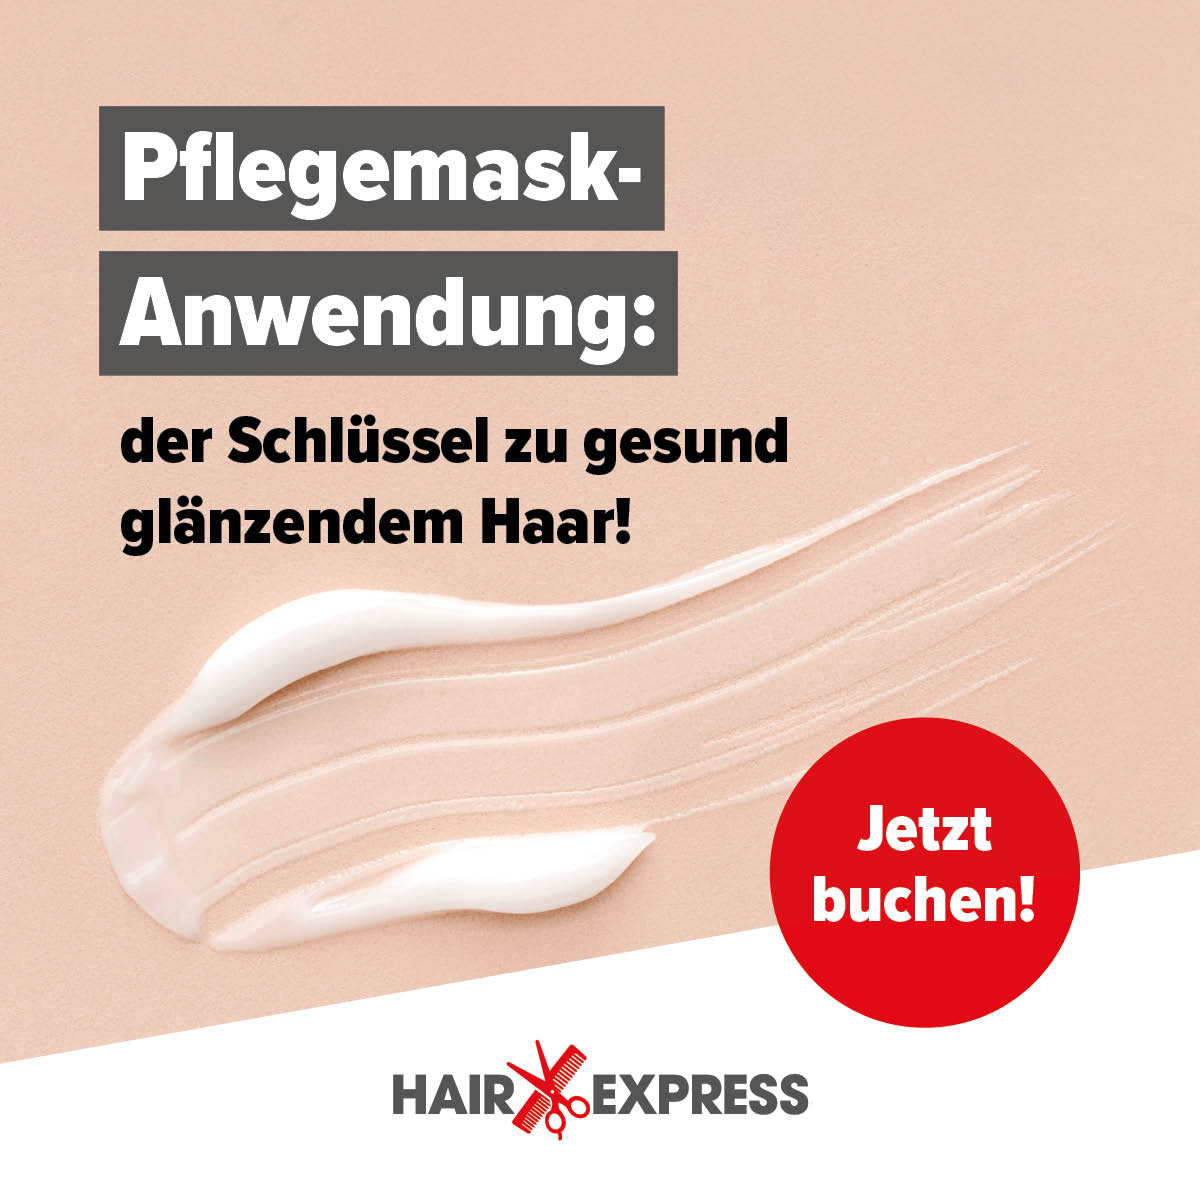 Der Schlüs­sel zu gesund glän­zen­dem Haar: die Pfle­ge­mas­ke-Anwen­dung bei HairExpress!